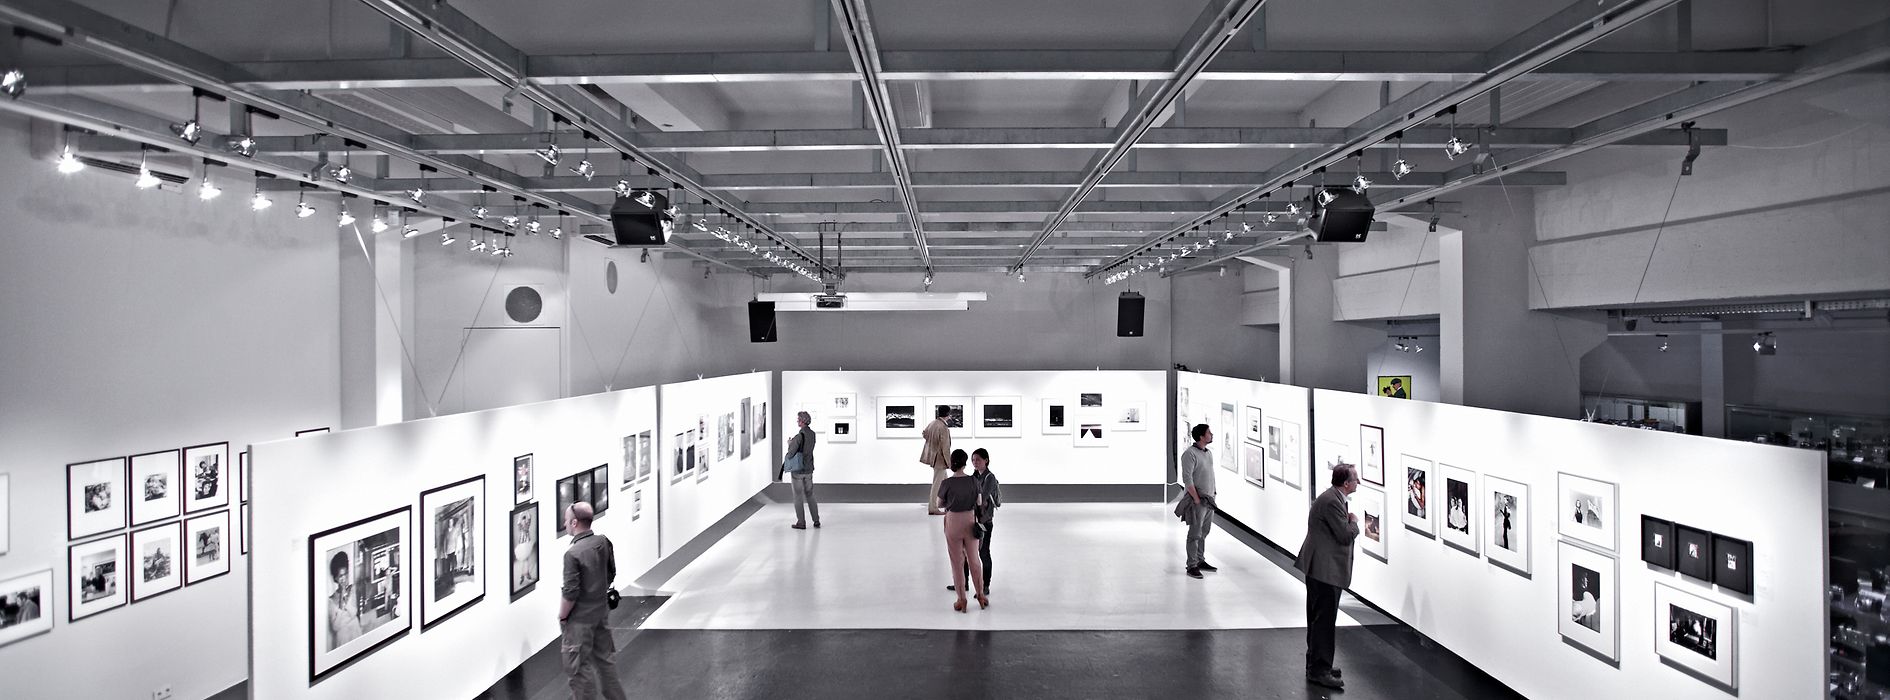 Sala principale della galleria WestLicht